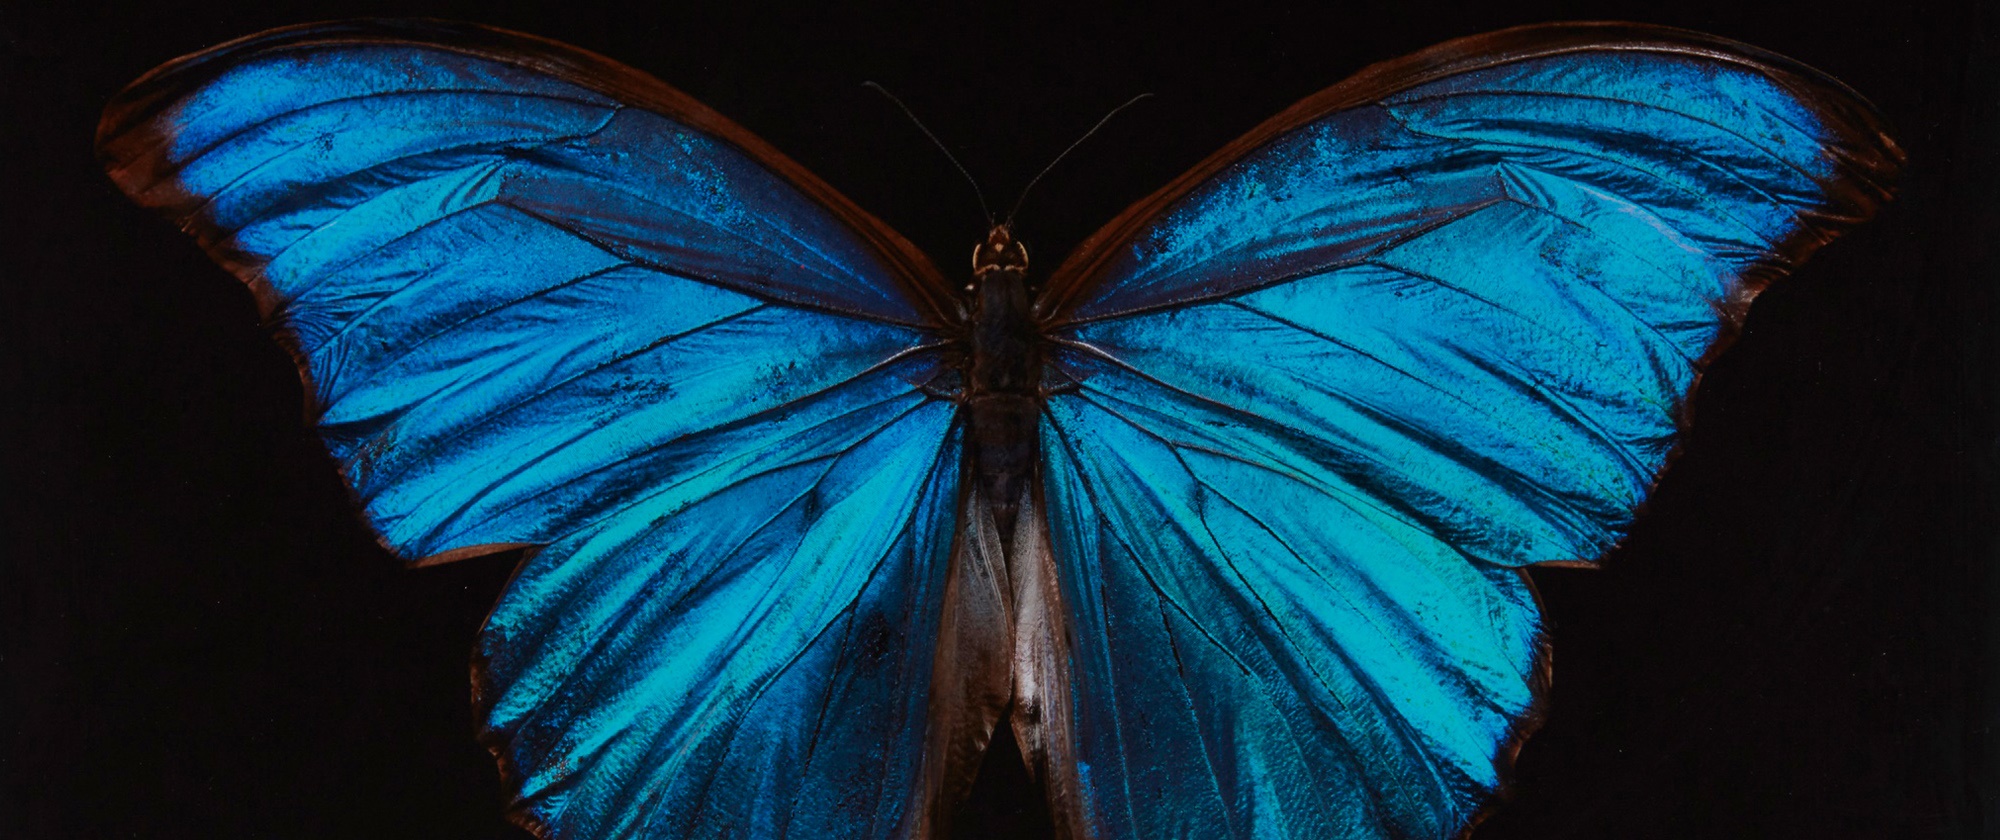 Alexander James's Butterflies